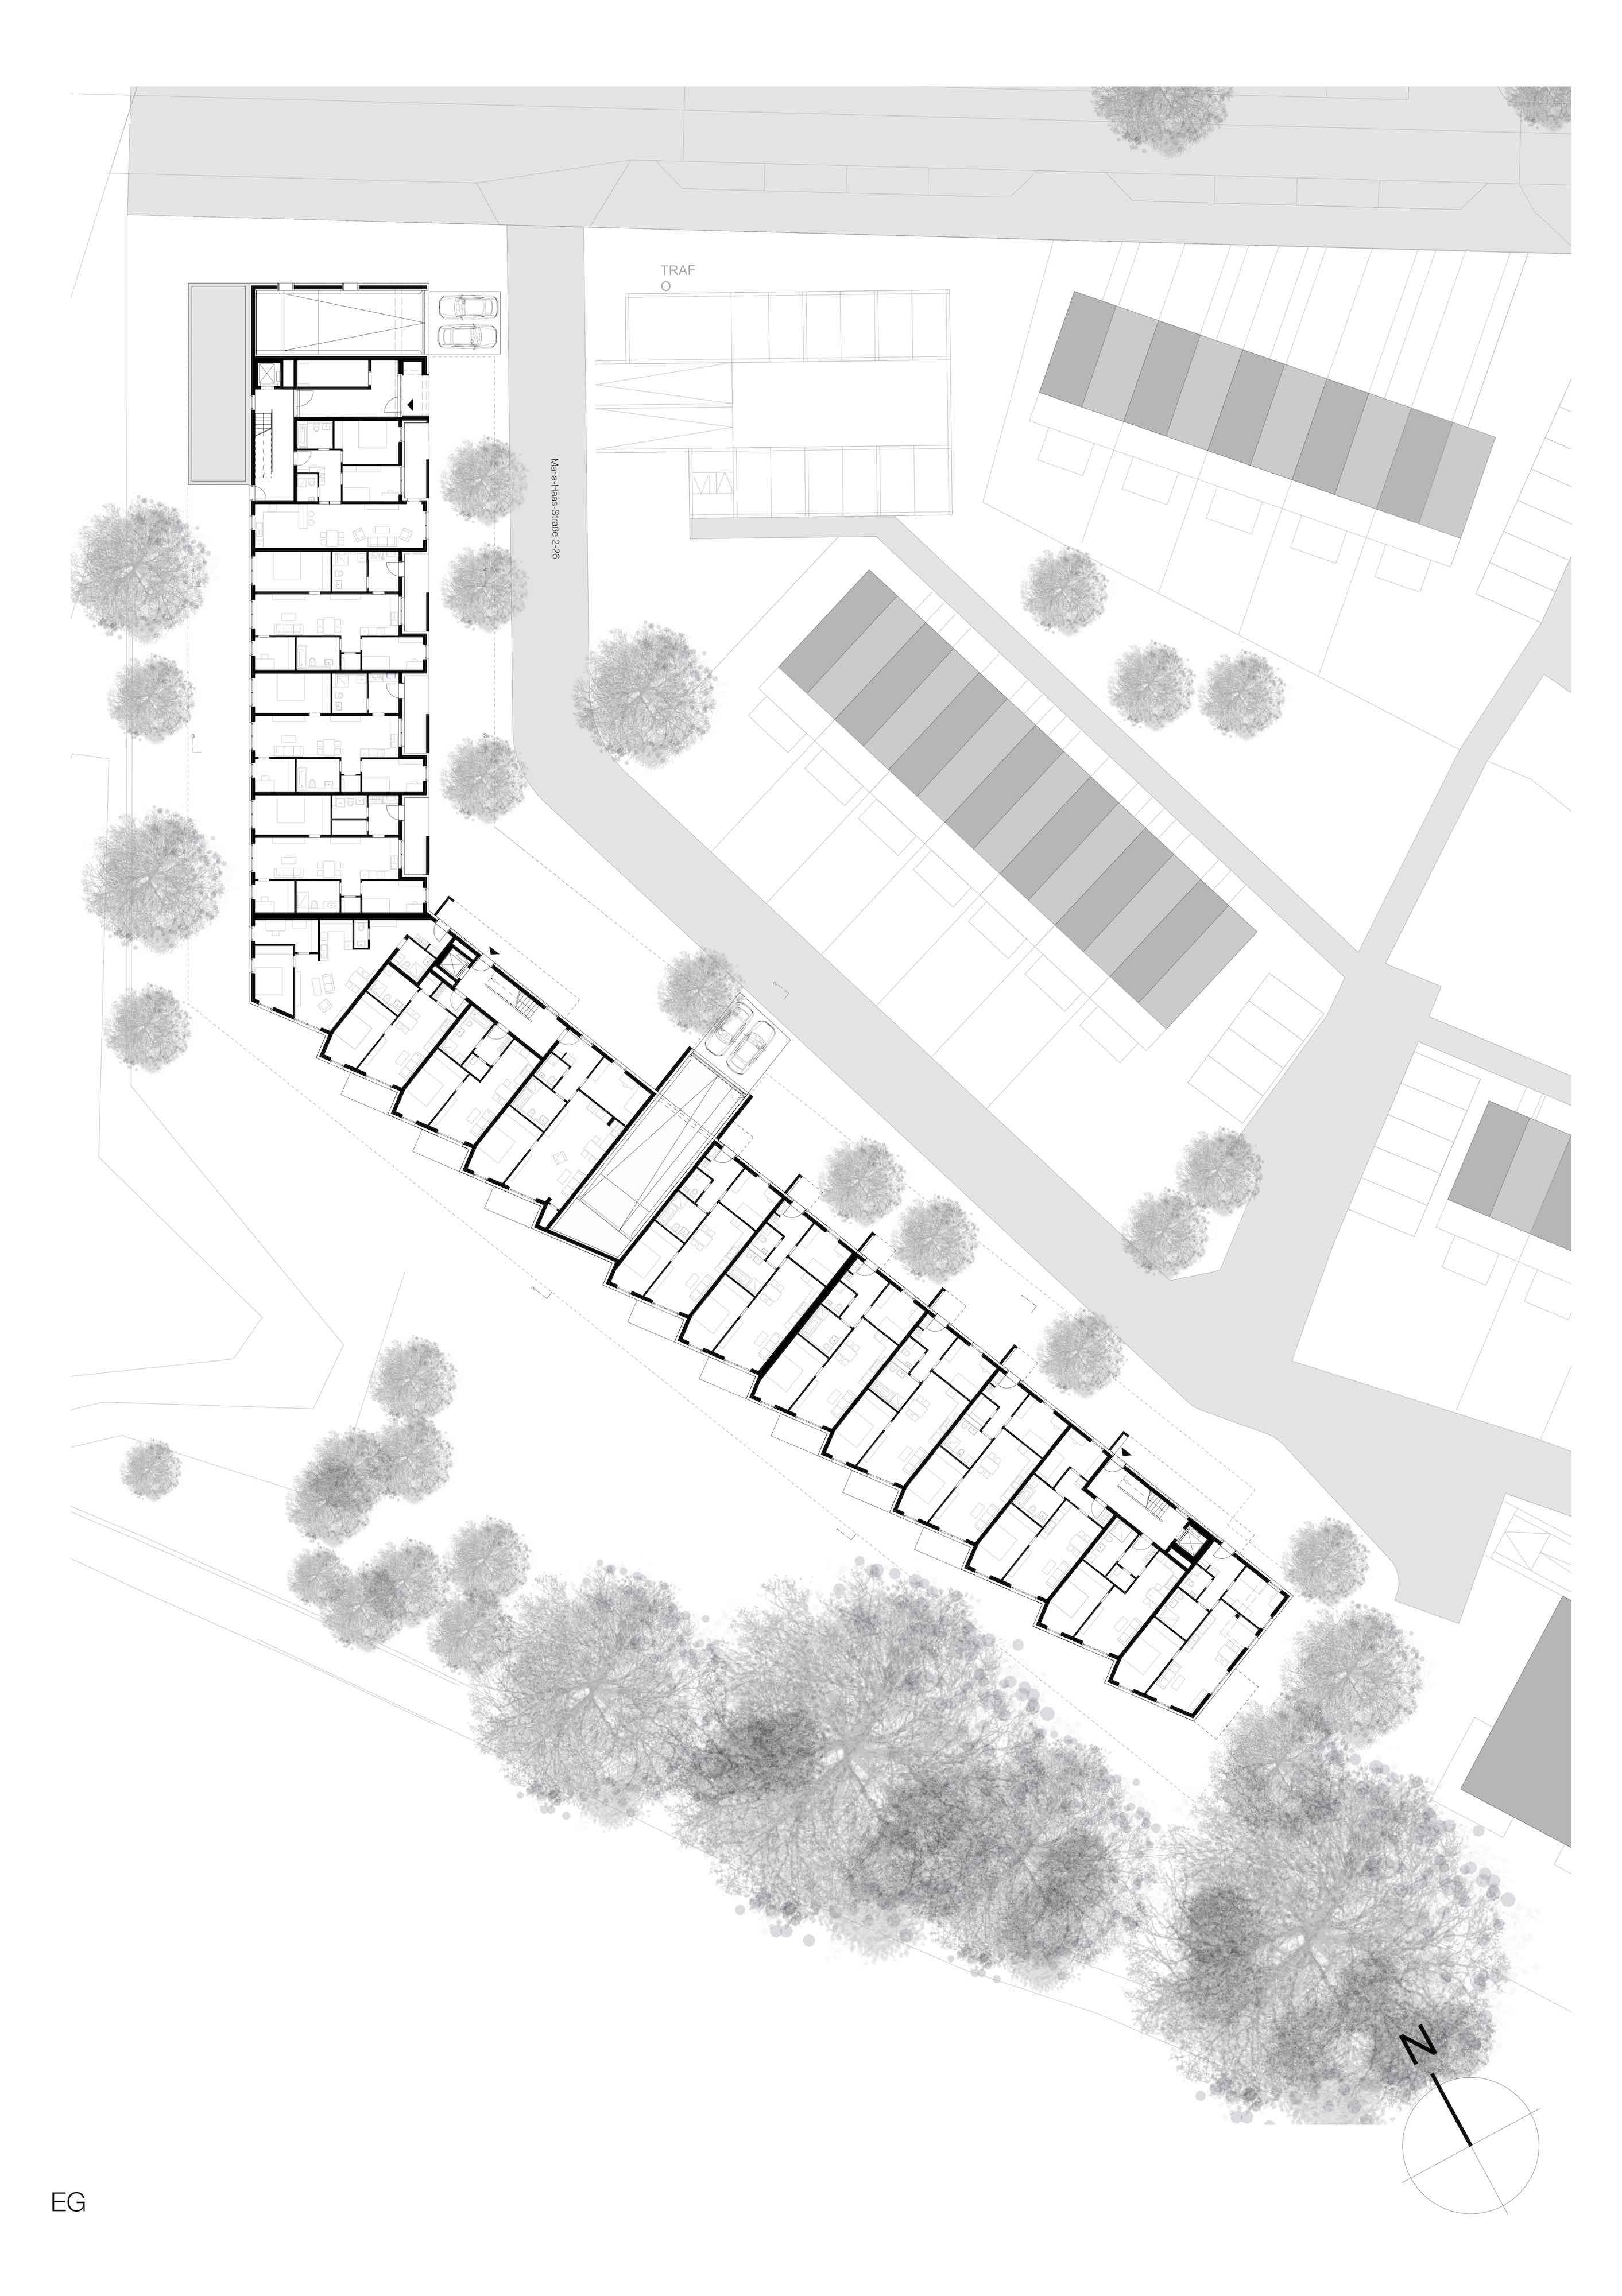 Bild zum Projekt Eichquartier in Nürnberg, Neubau von 66 Wohnungen